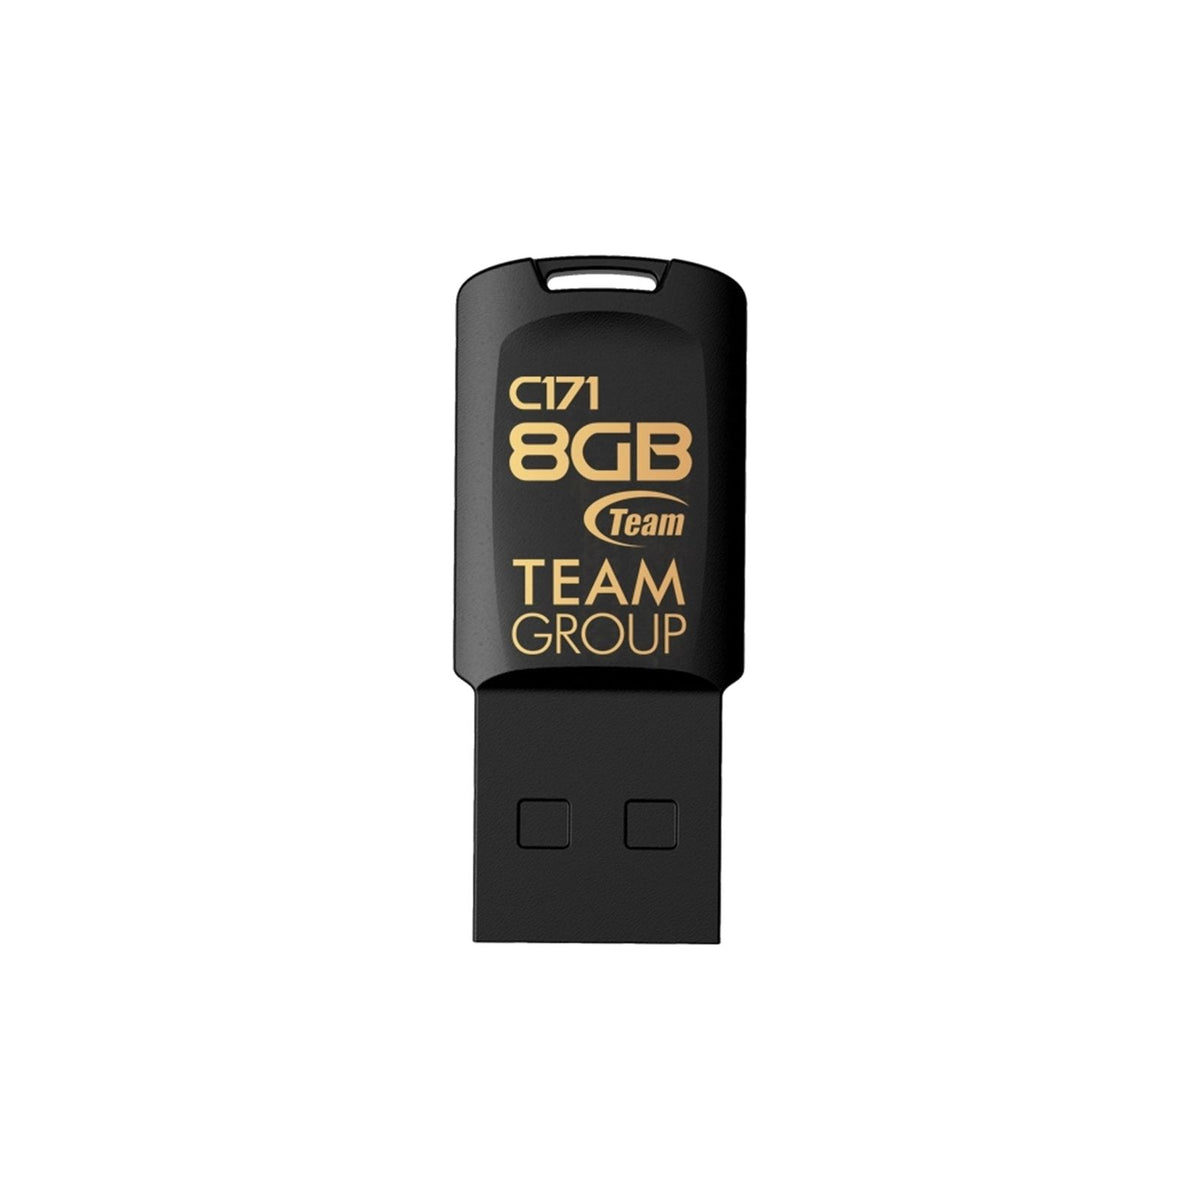 Team C171 8GB USB 2.0 Flash Drive - Black | 035256 (7637291925692)